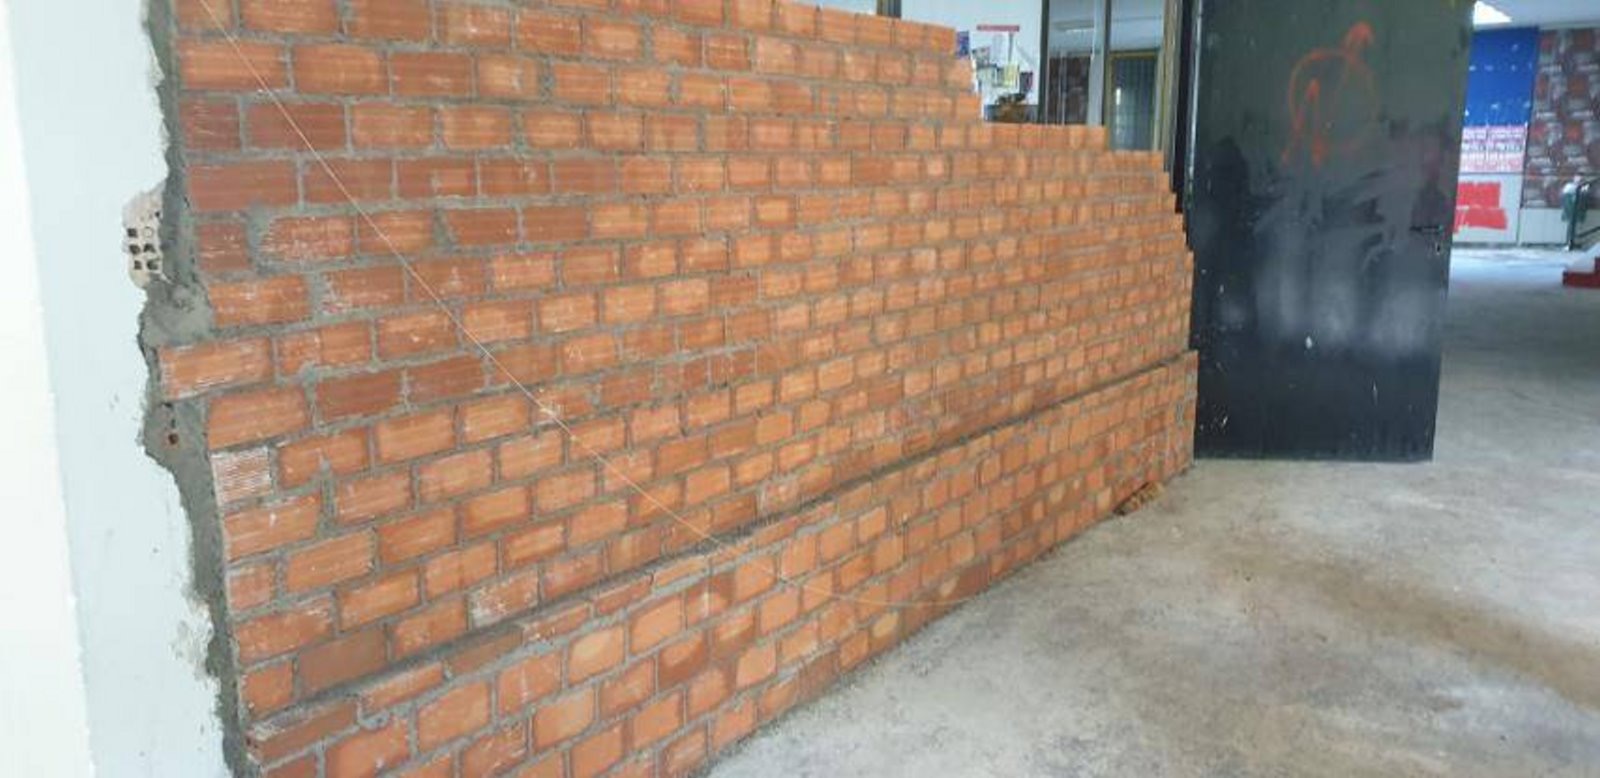 Φοιτητές πήγαν να χτίσουν… τοίχο μέσα στο ΕΜΠ -Κατεδαφίστηκε με εντολή Θεοδωρικάκου [εικόνες]